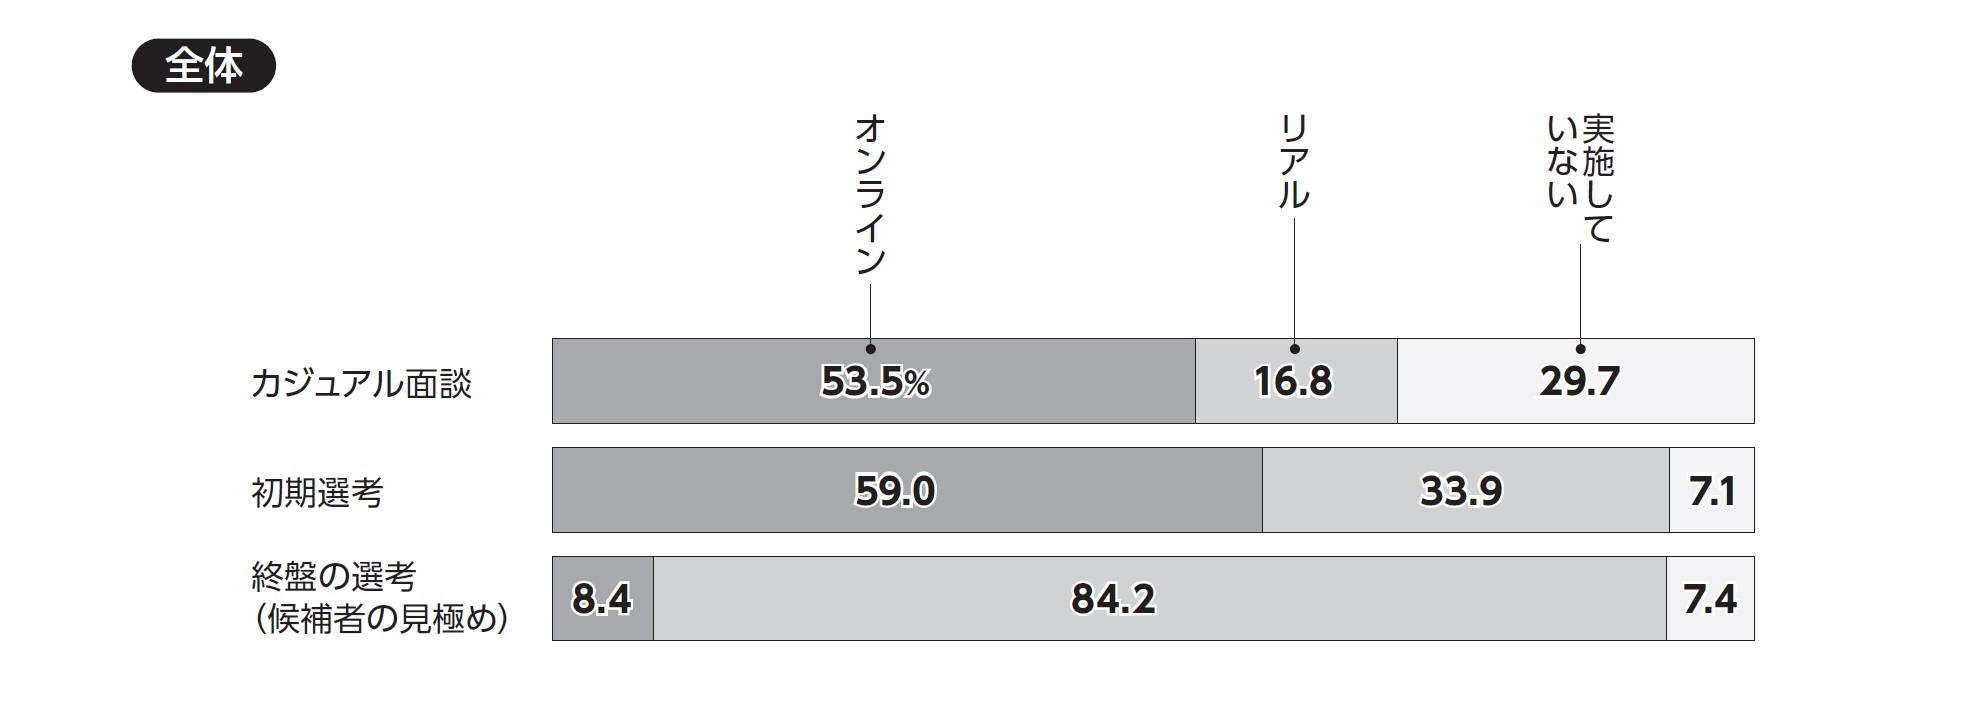 『日本の人事部 人事白書 2021』「2-28 2021年以降の中途採用選考の理想の実施方法」